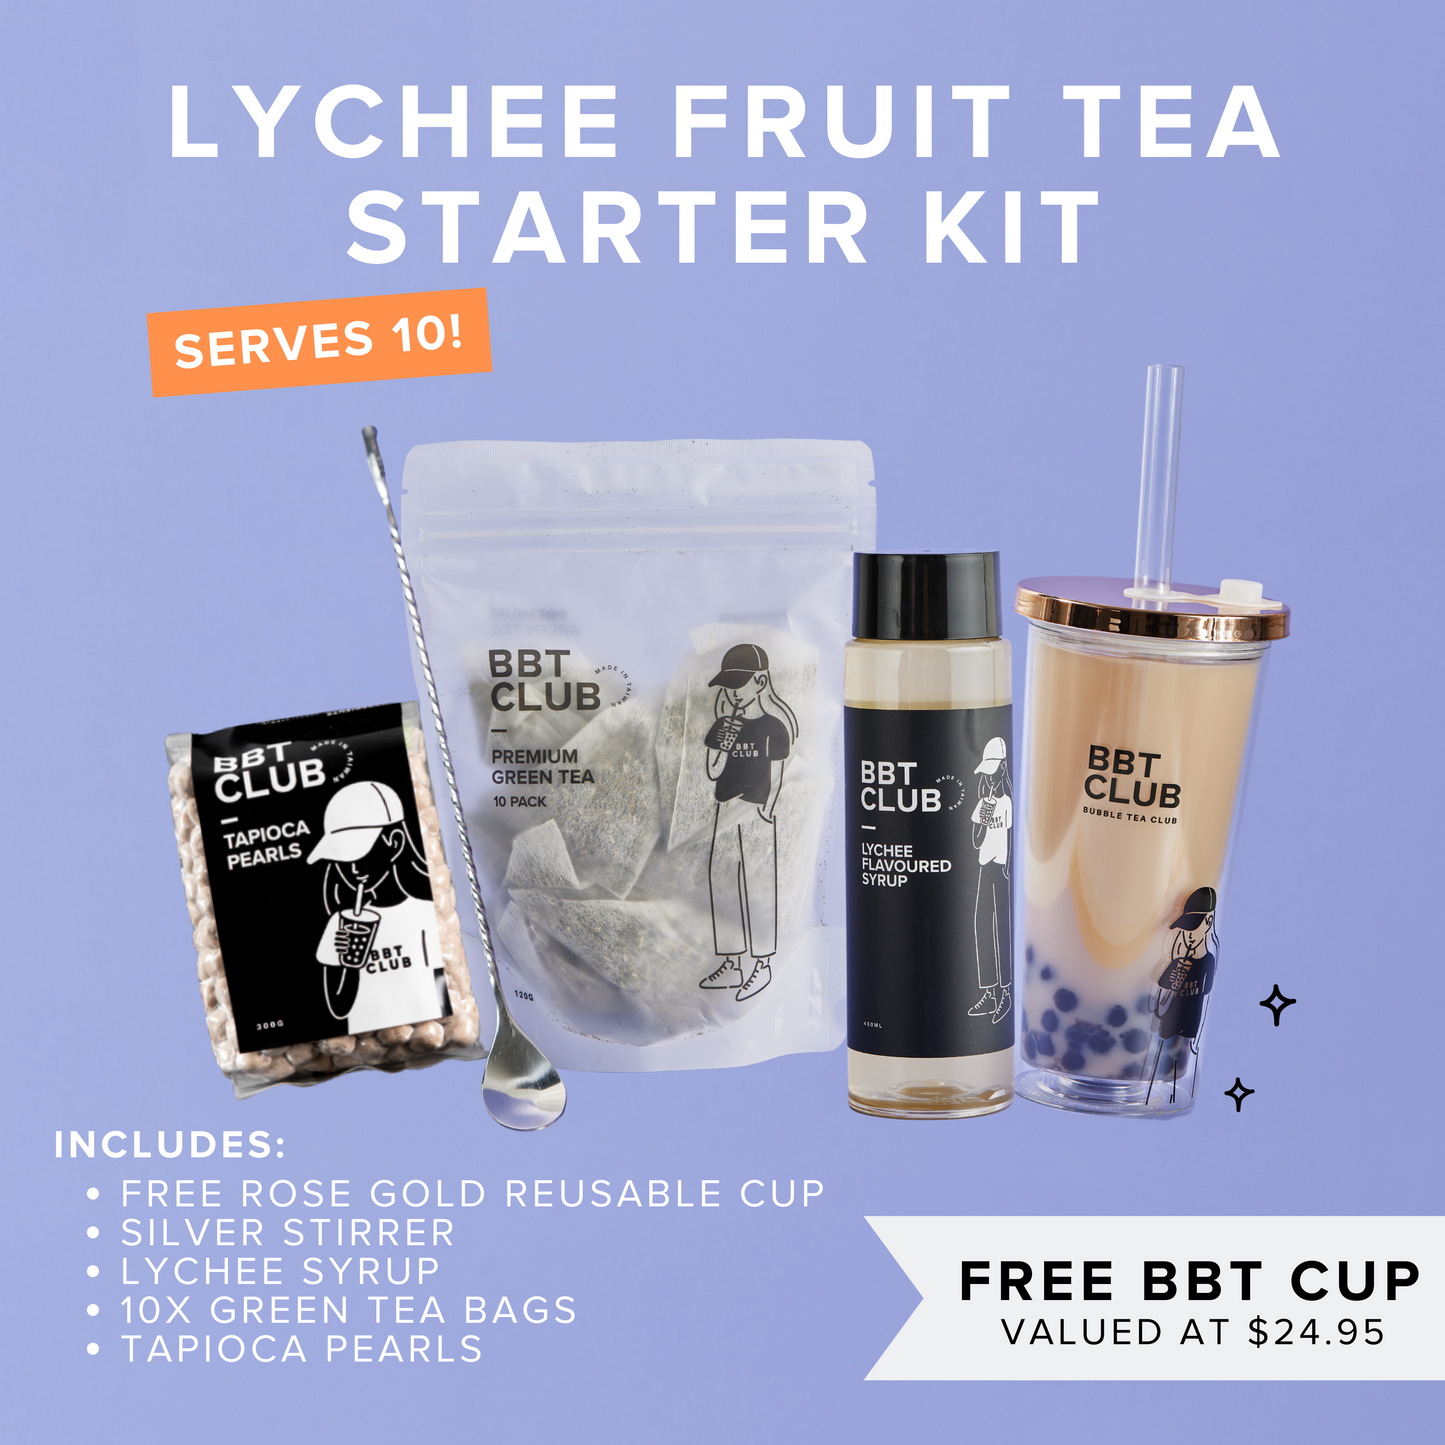 Fruit Tea Starter Kit